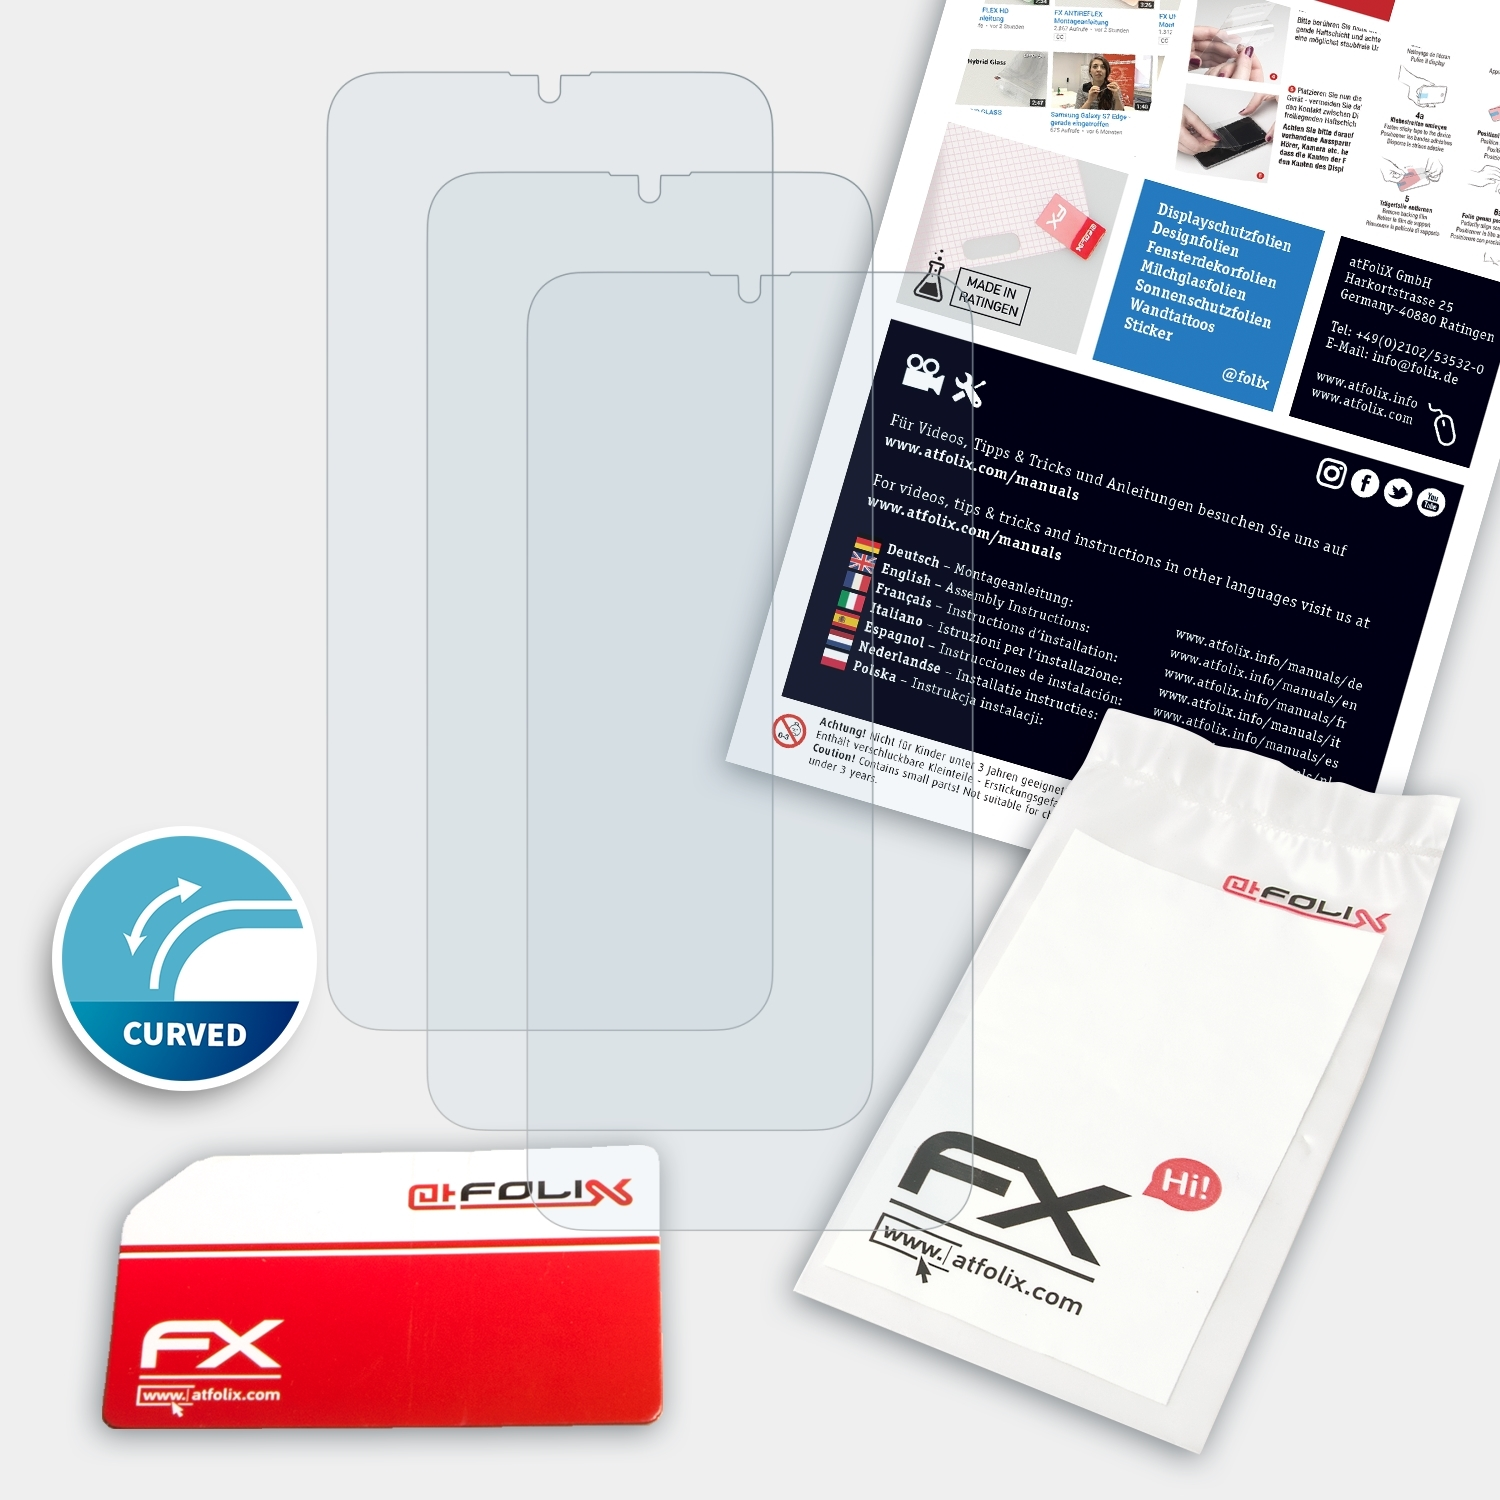 Displayschutz(für ATFOLIX Oppo 3x R17) FX-ActiFleX